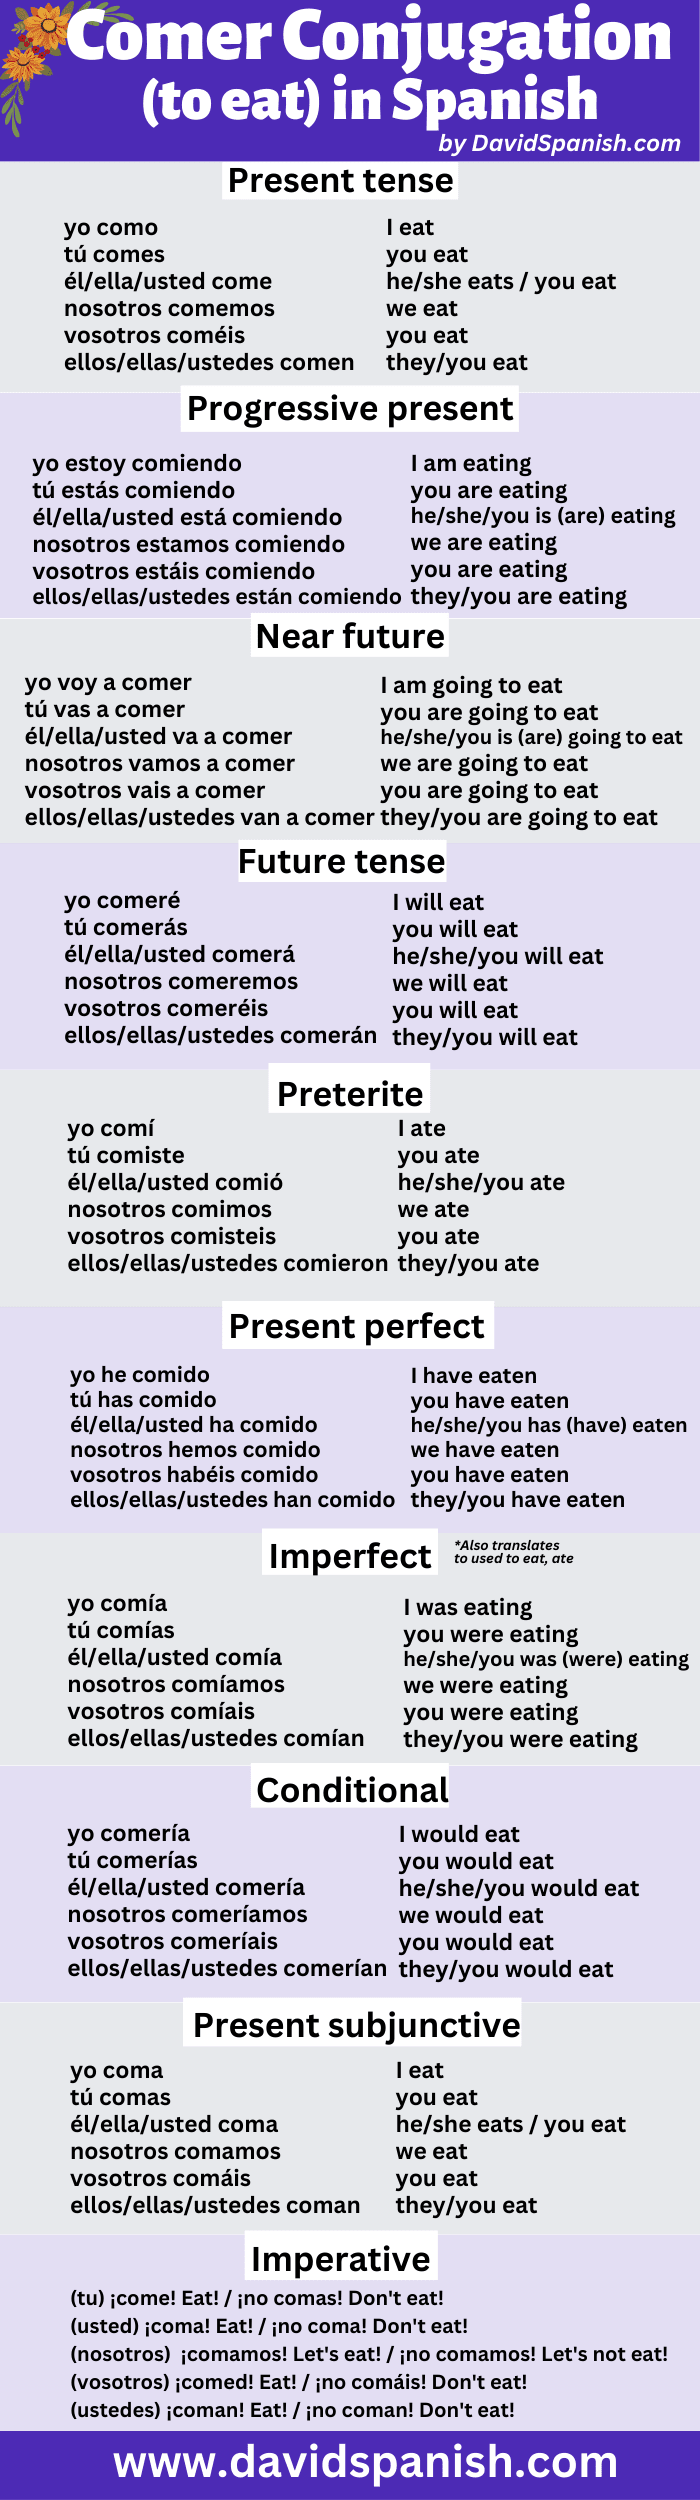 Comer conjugation table